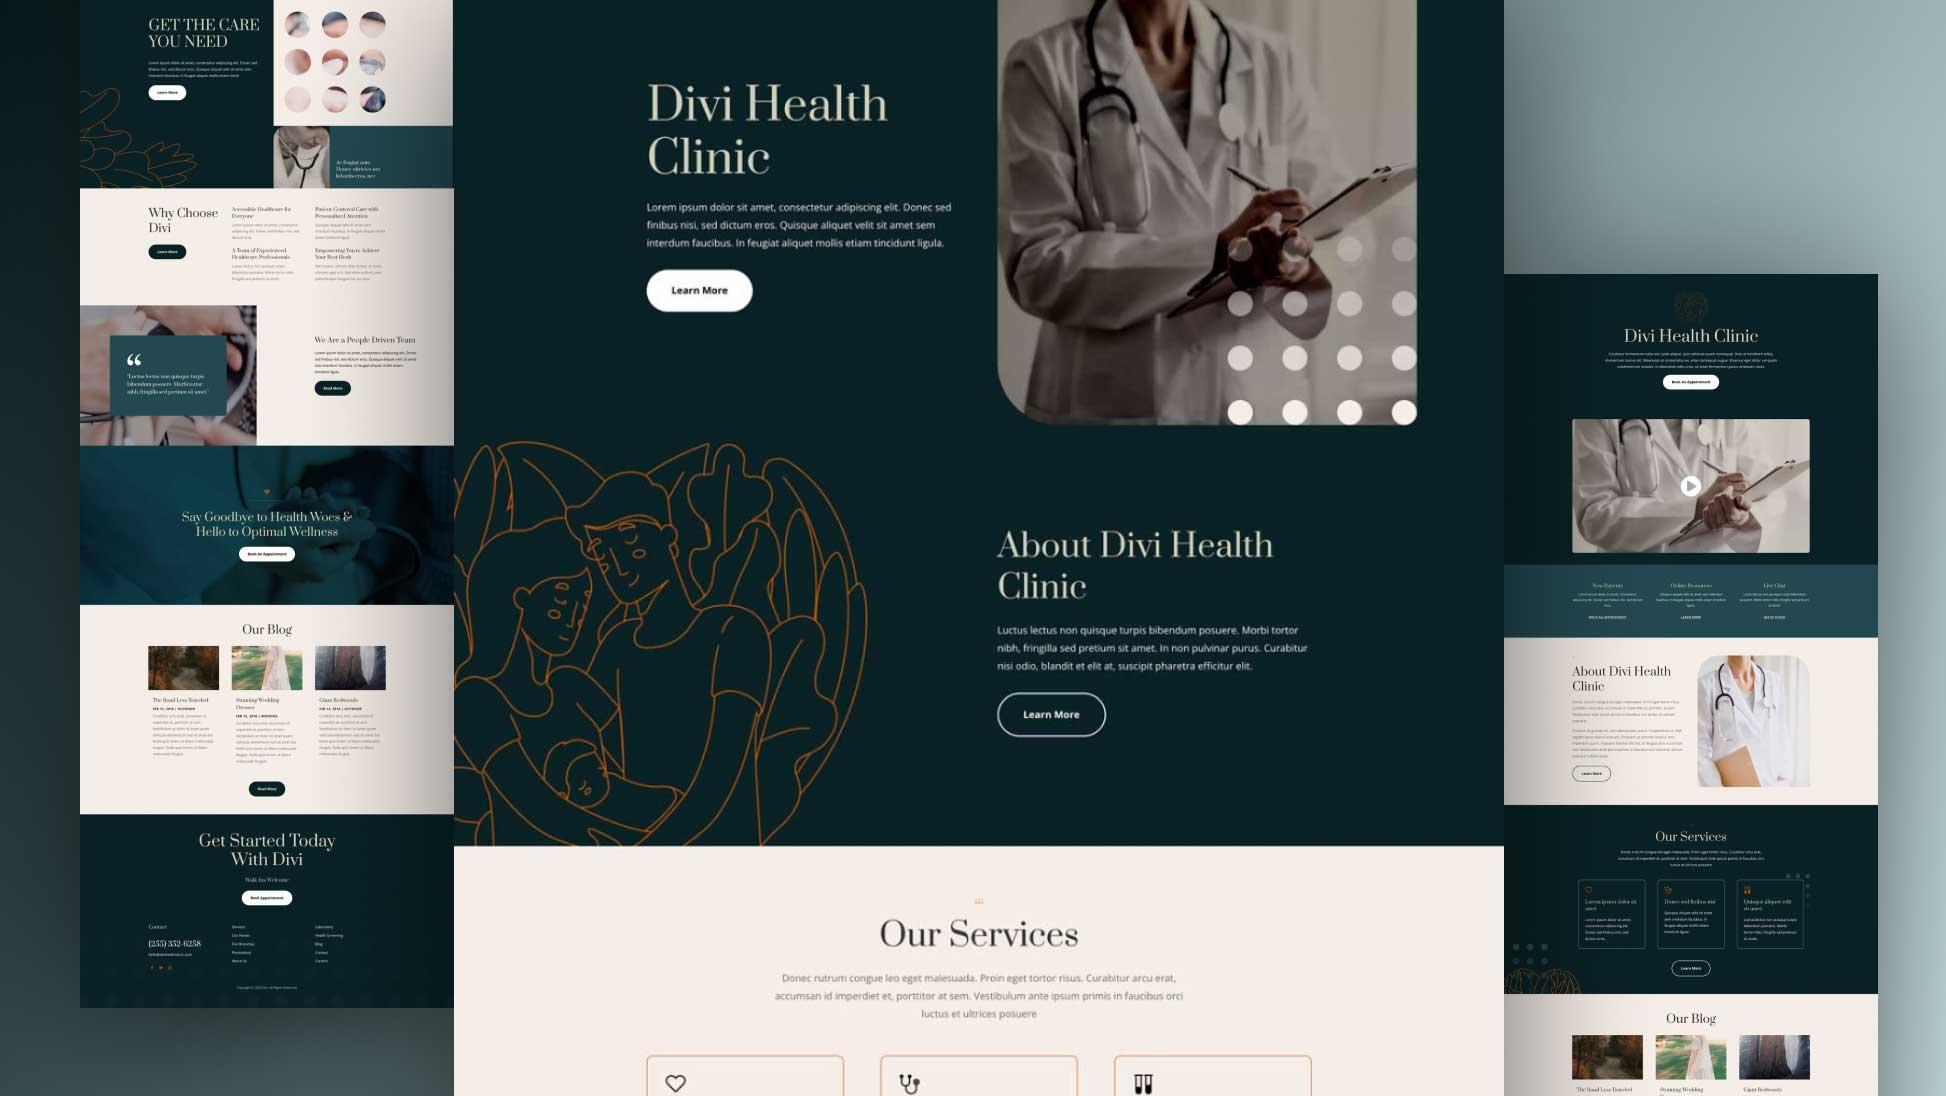 gesundheitszentrum-divi-kostenloses-layout-pack